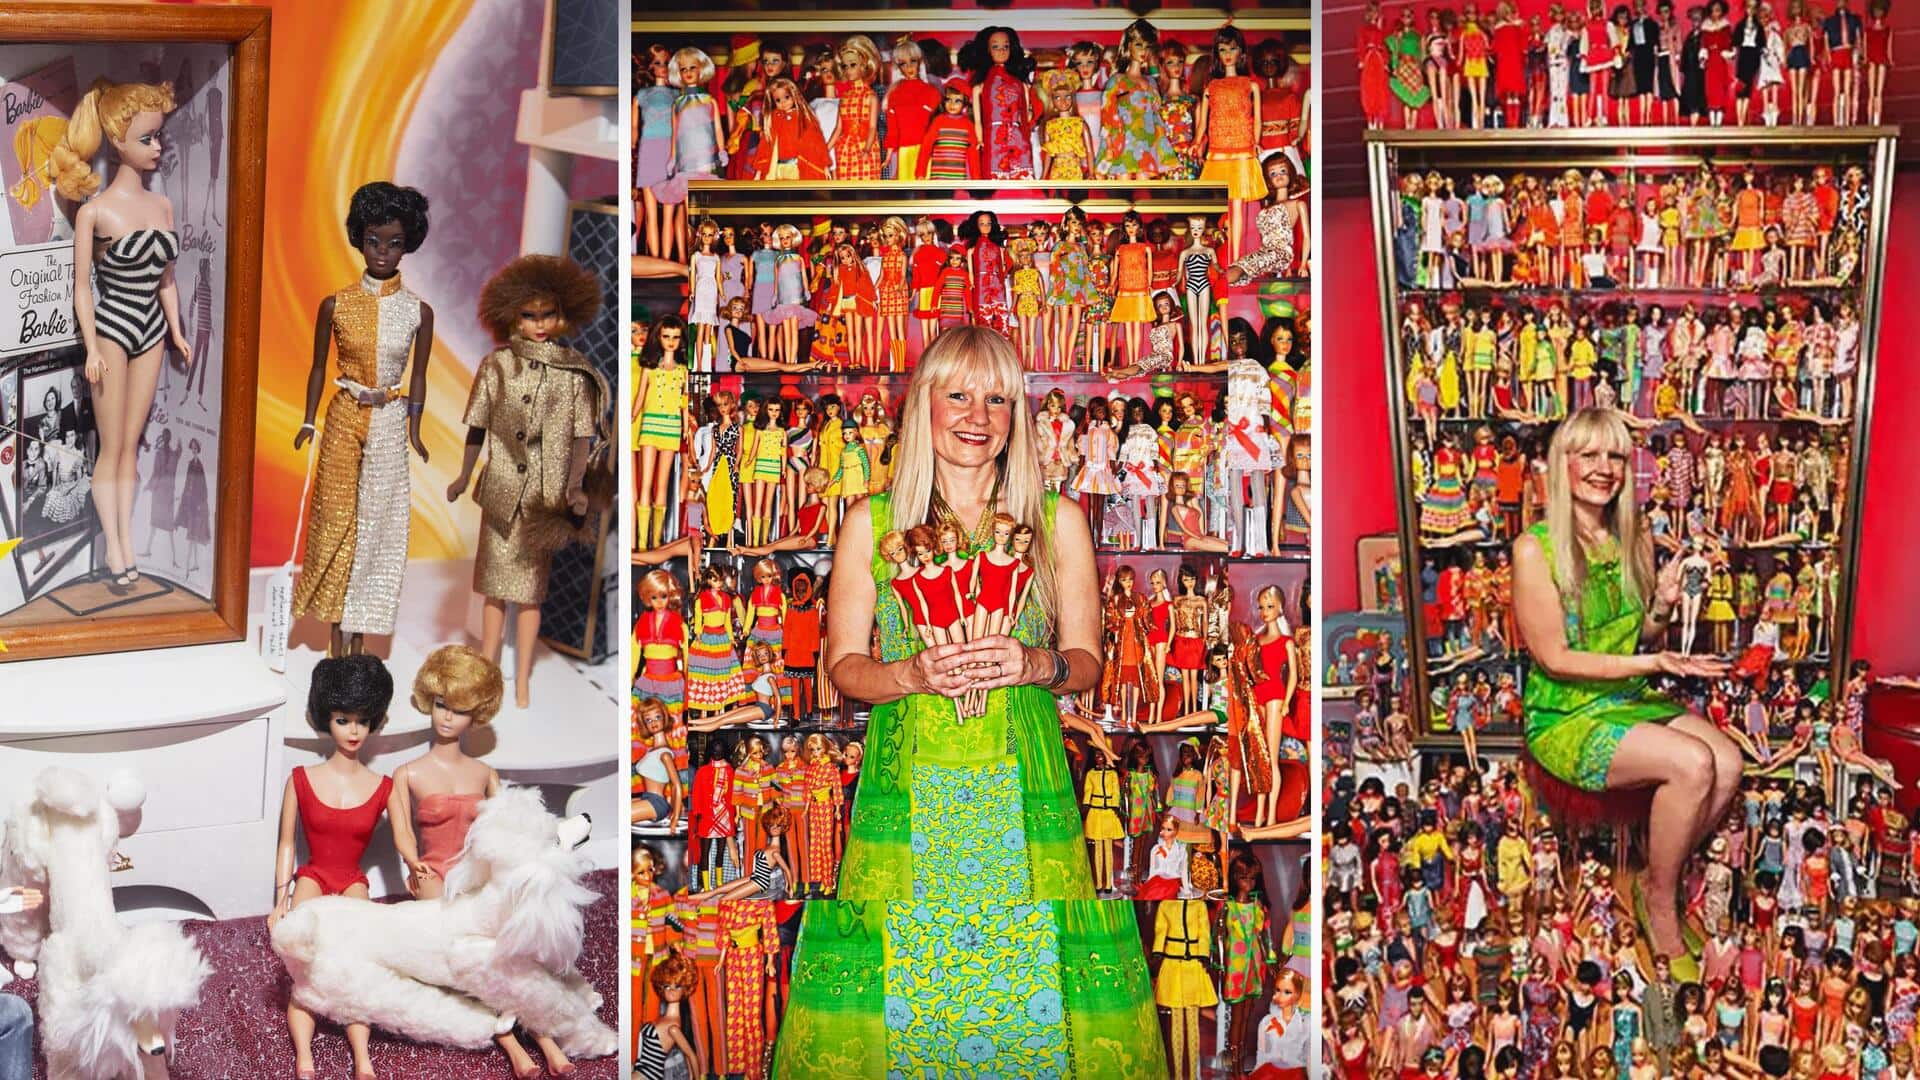 दुनिया के सबसे बड़े बार्बी डॉल संग्रह करने वाली जर्मन महिला बनी 'गुड़िया की डॉक्टर'